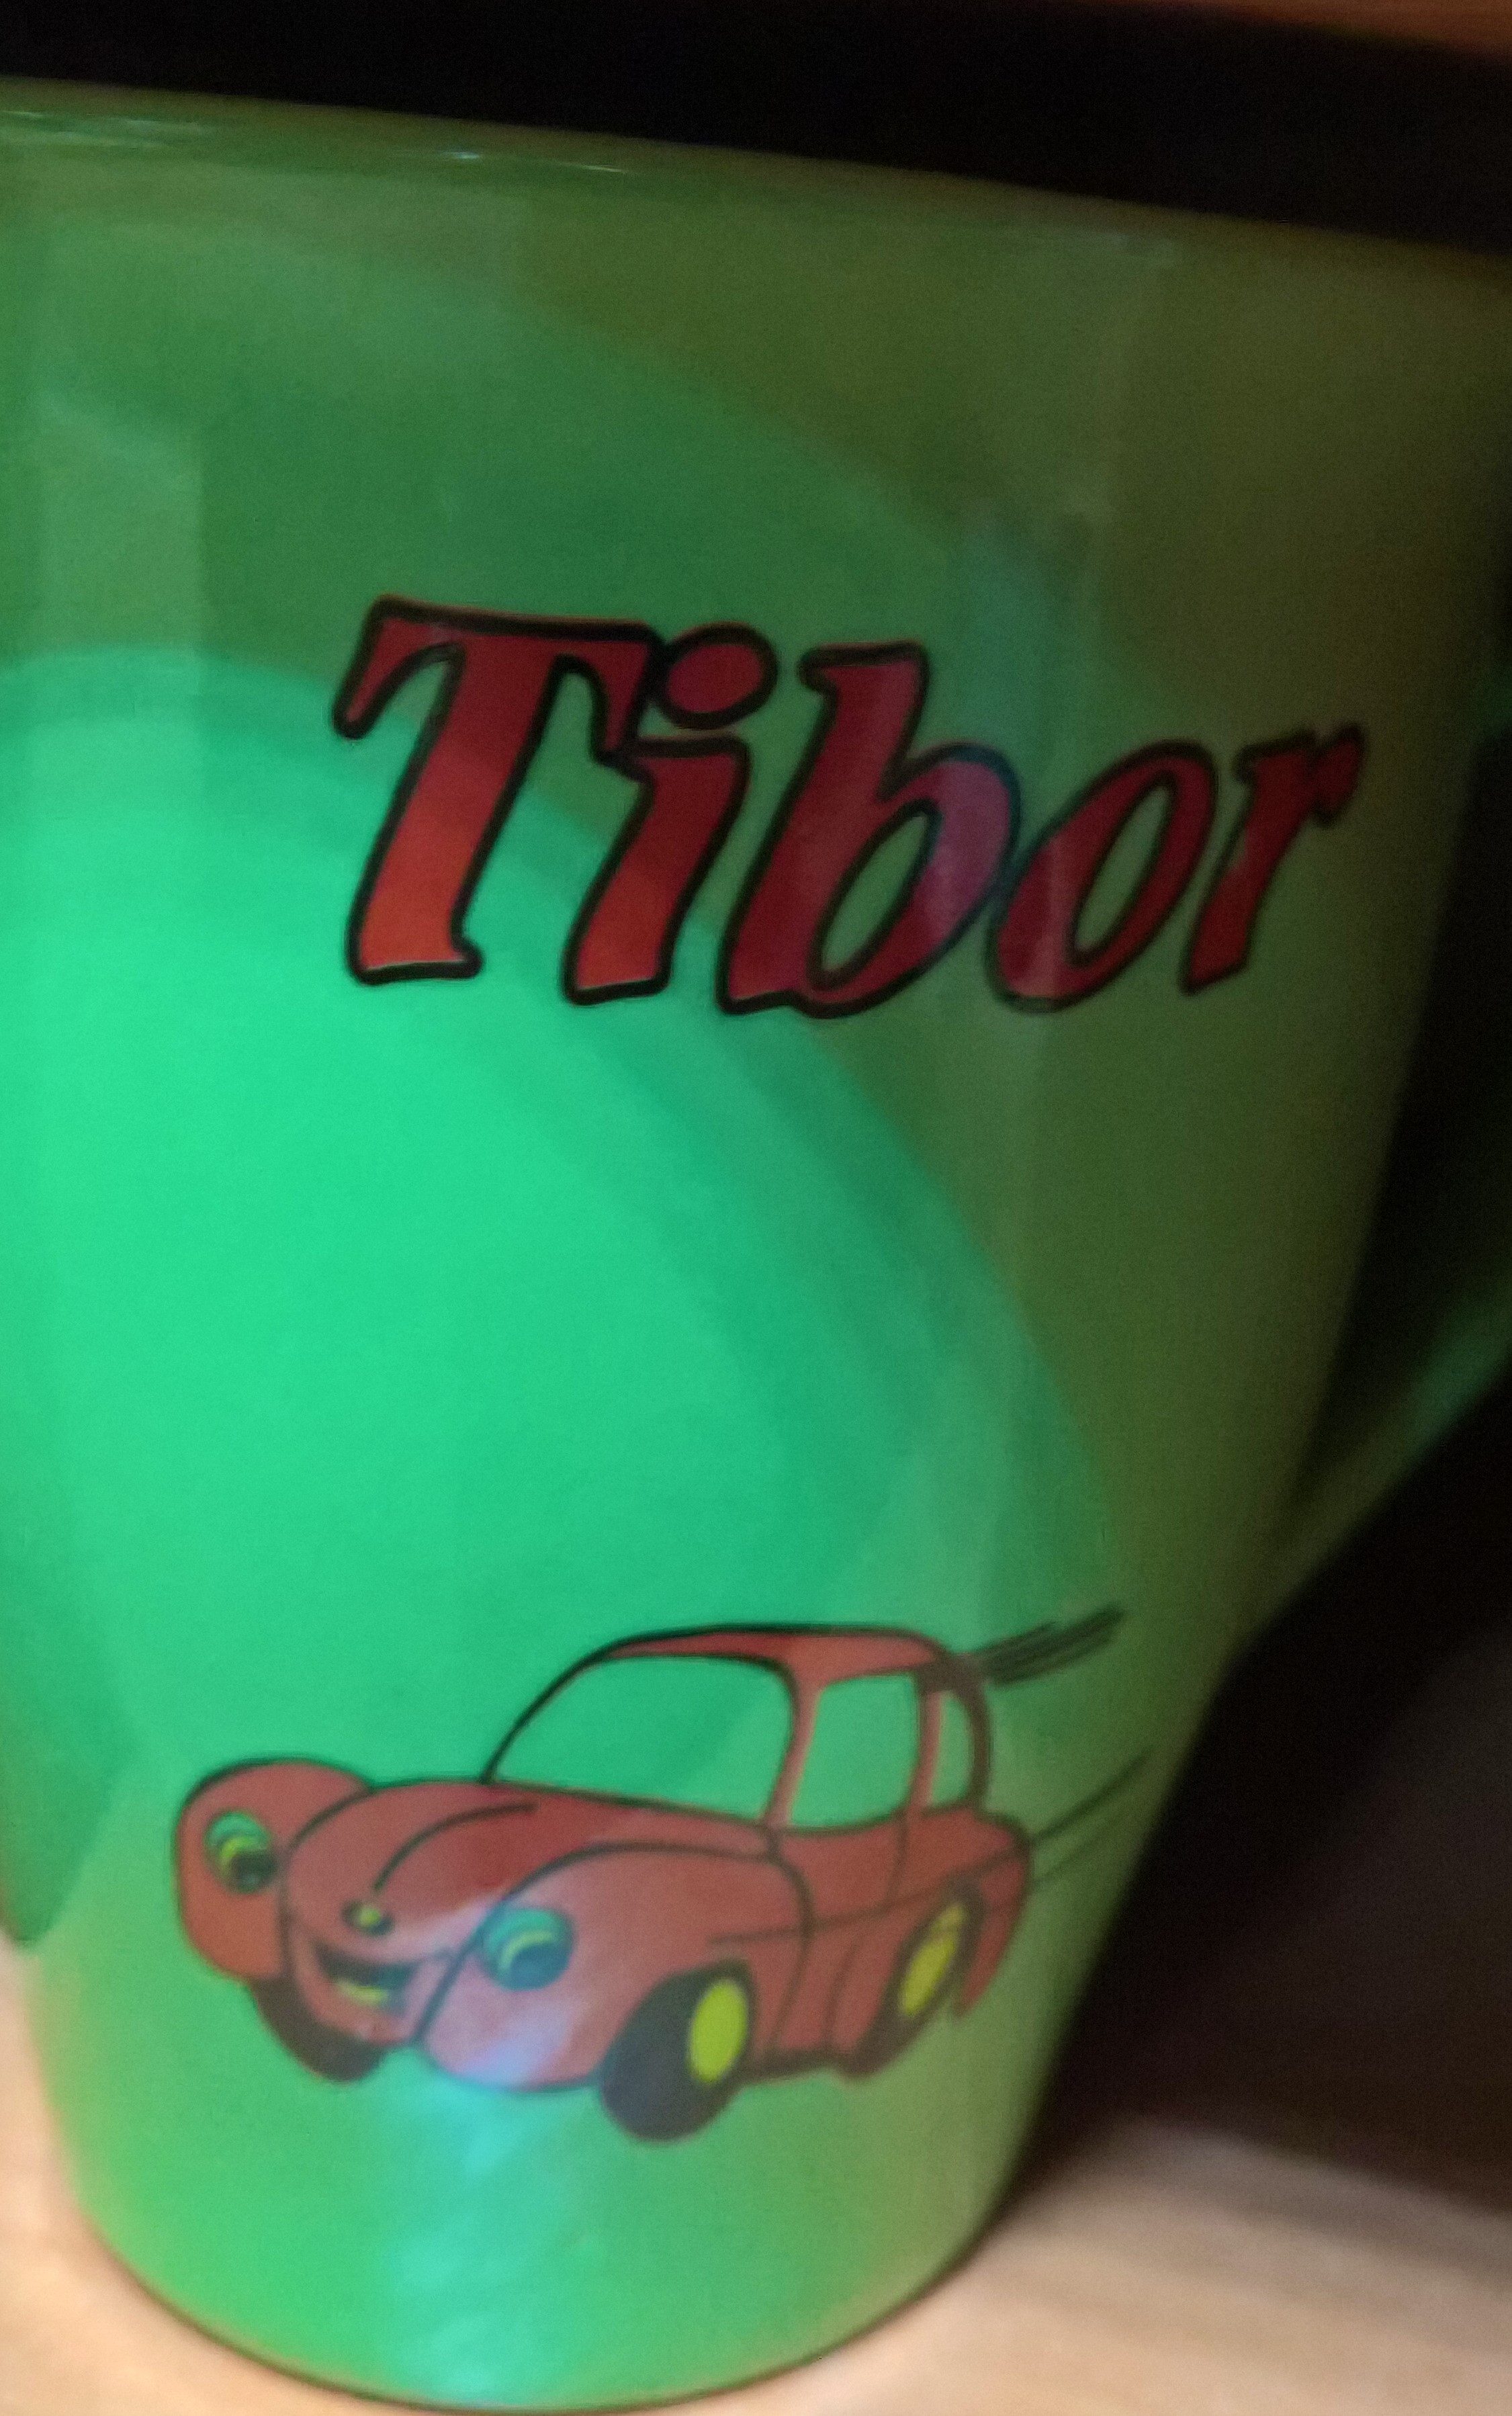 Hrnček "Tibor"